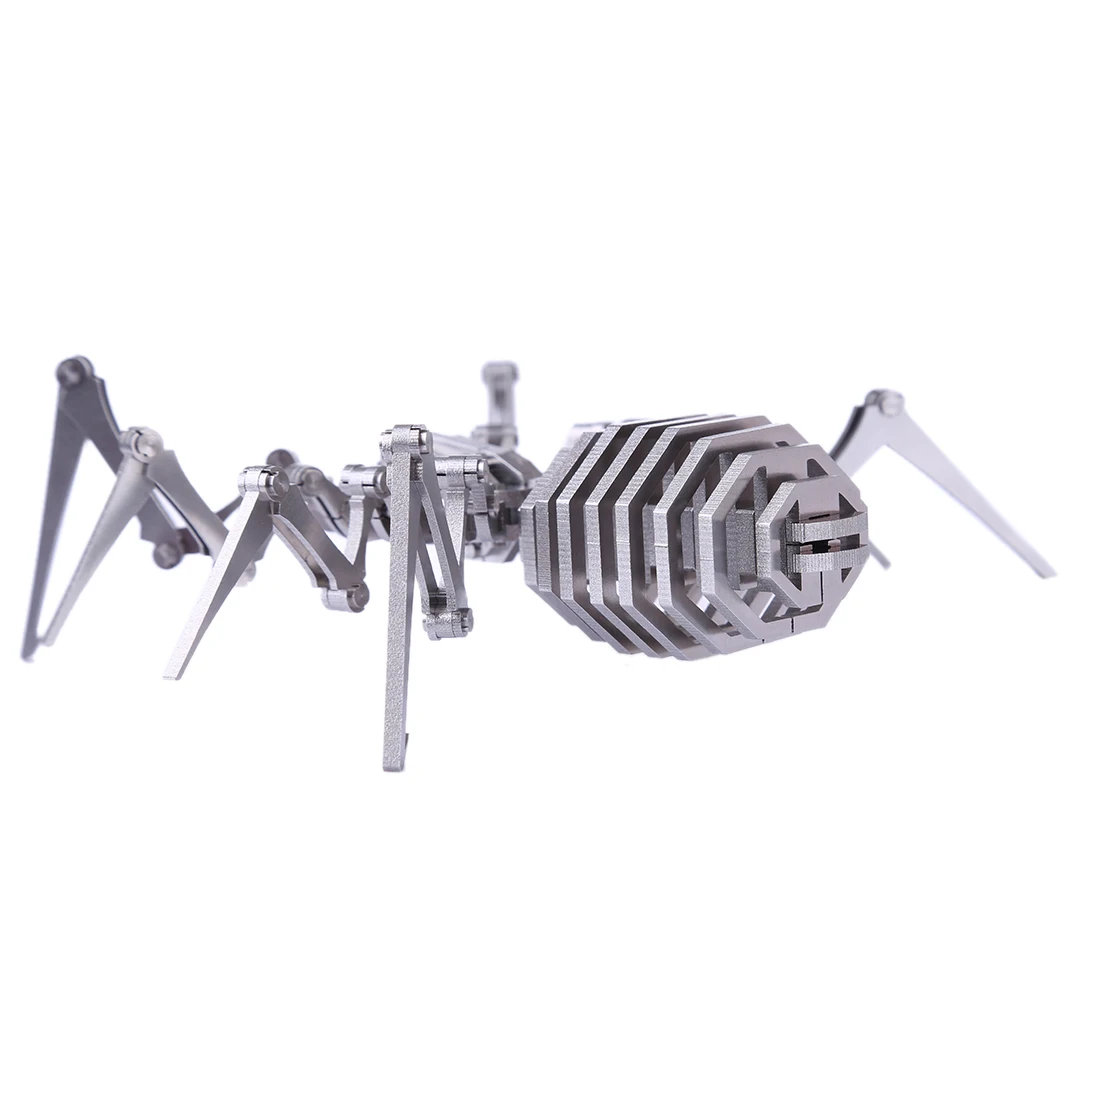 84 шт./компл. DIY собираемая Модель Строительный мининабор, 3D Нержавеющая сталь в собранном виде съемная модель головоломка домашнего украшения-паук King